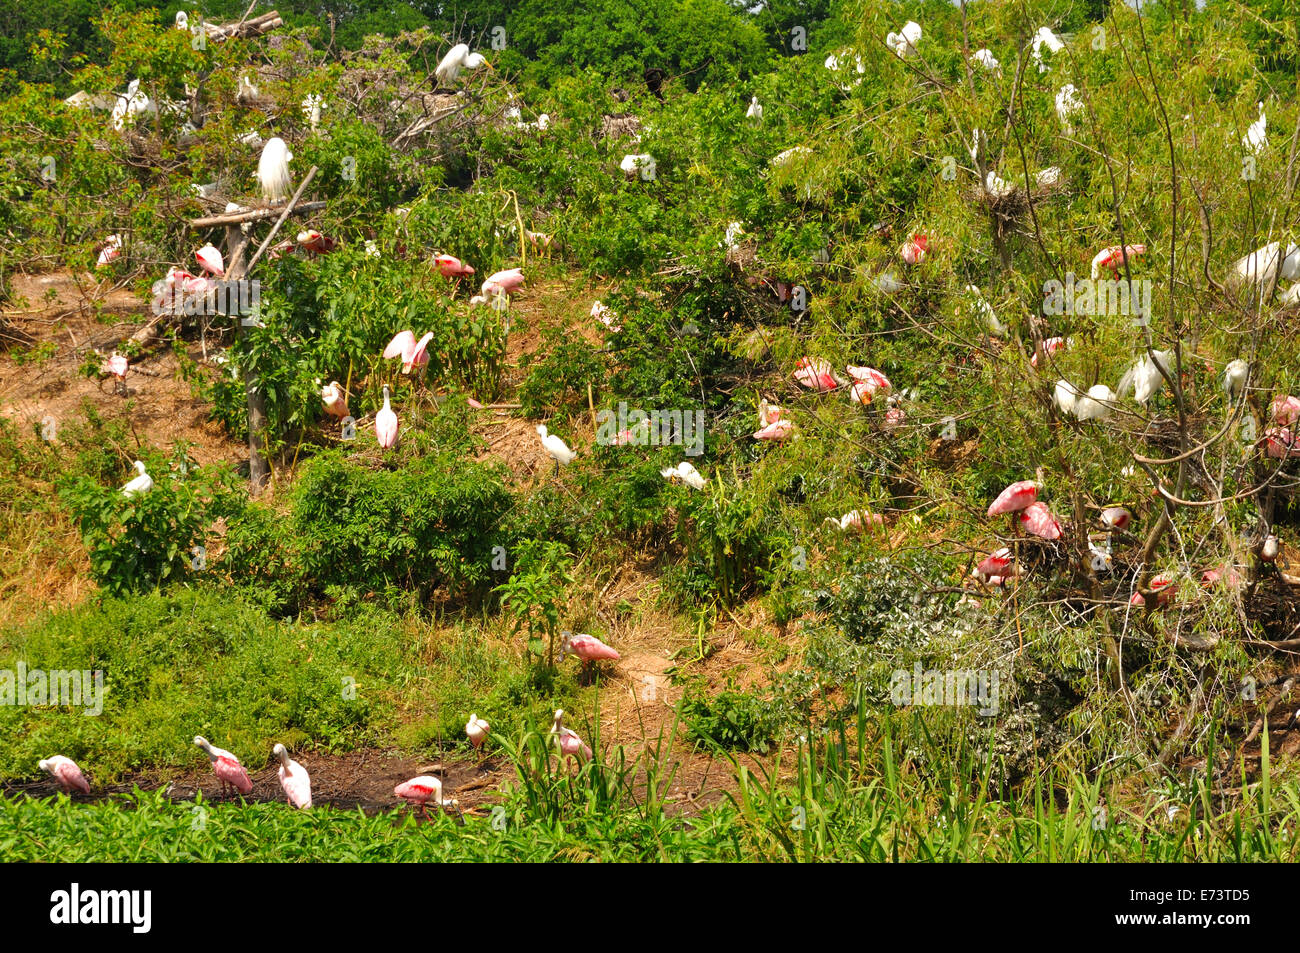 Smith Oaks Bird Sanctuary su Alta isola , vicino a Galveston, Texas, Stati Uniti d'America Foto Stock